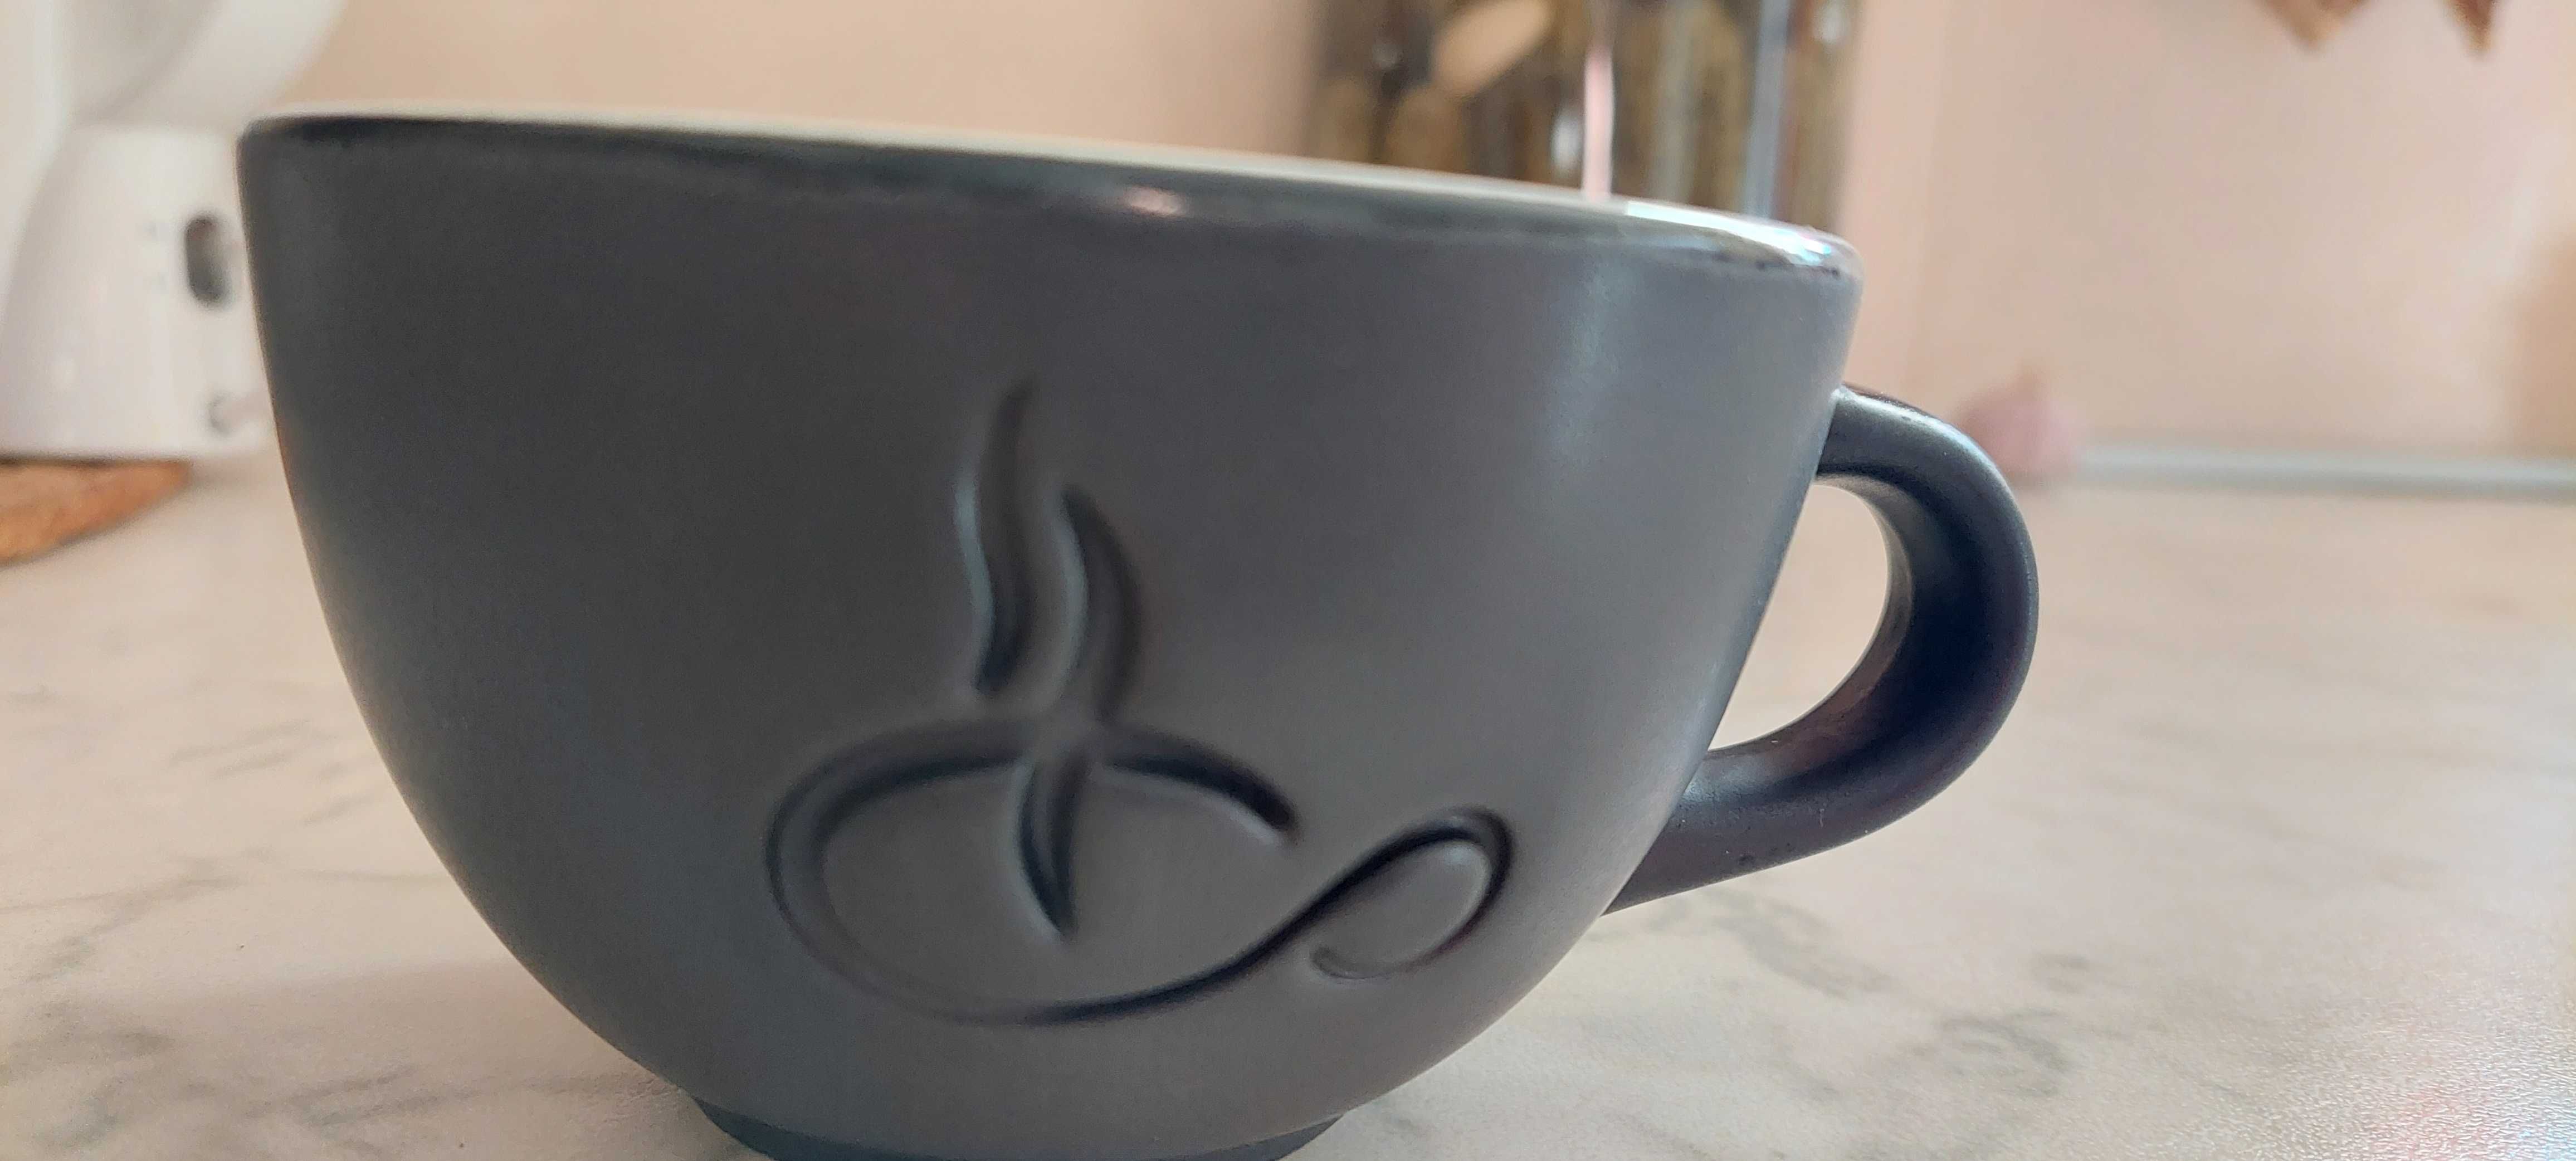 vand cesti cafea ceramica realizate manual